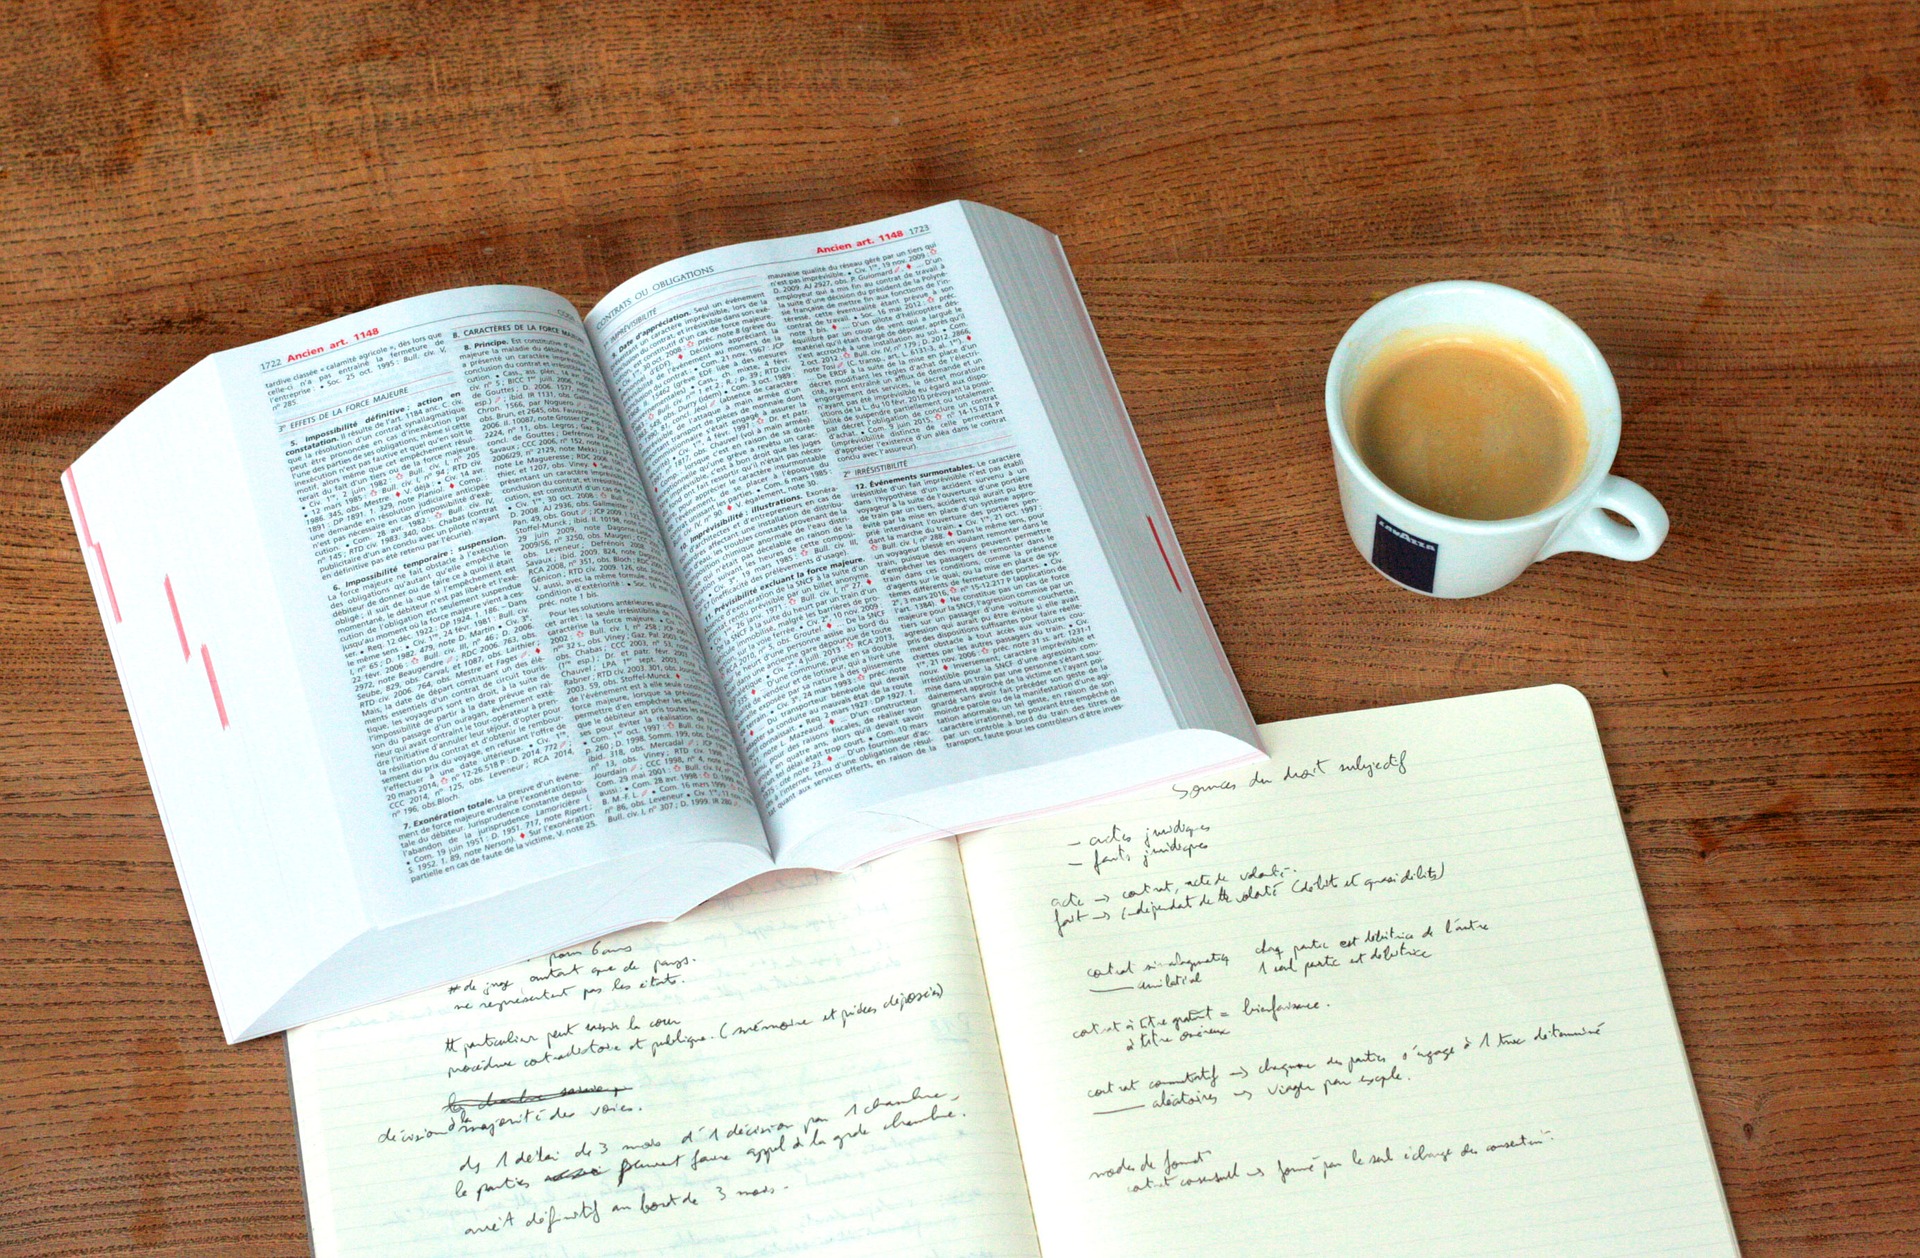 Bild zeigt ein Notizblock, ein Buch & eine Tasse Kaffee auf einer Holzoberfläche